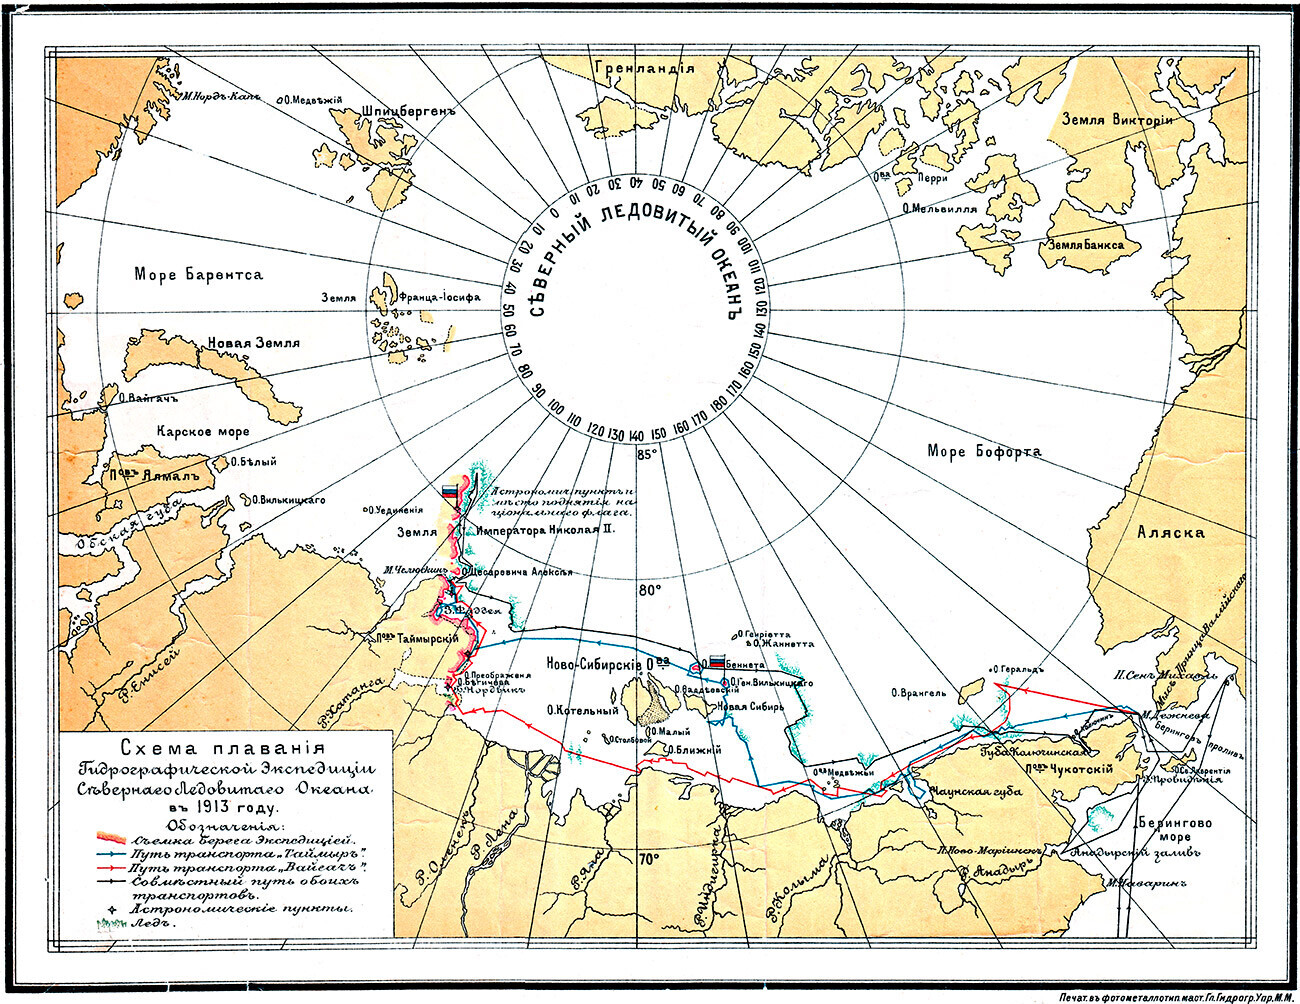 Rota da expedição de 1913.